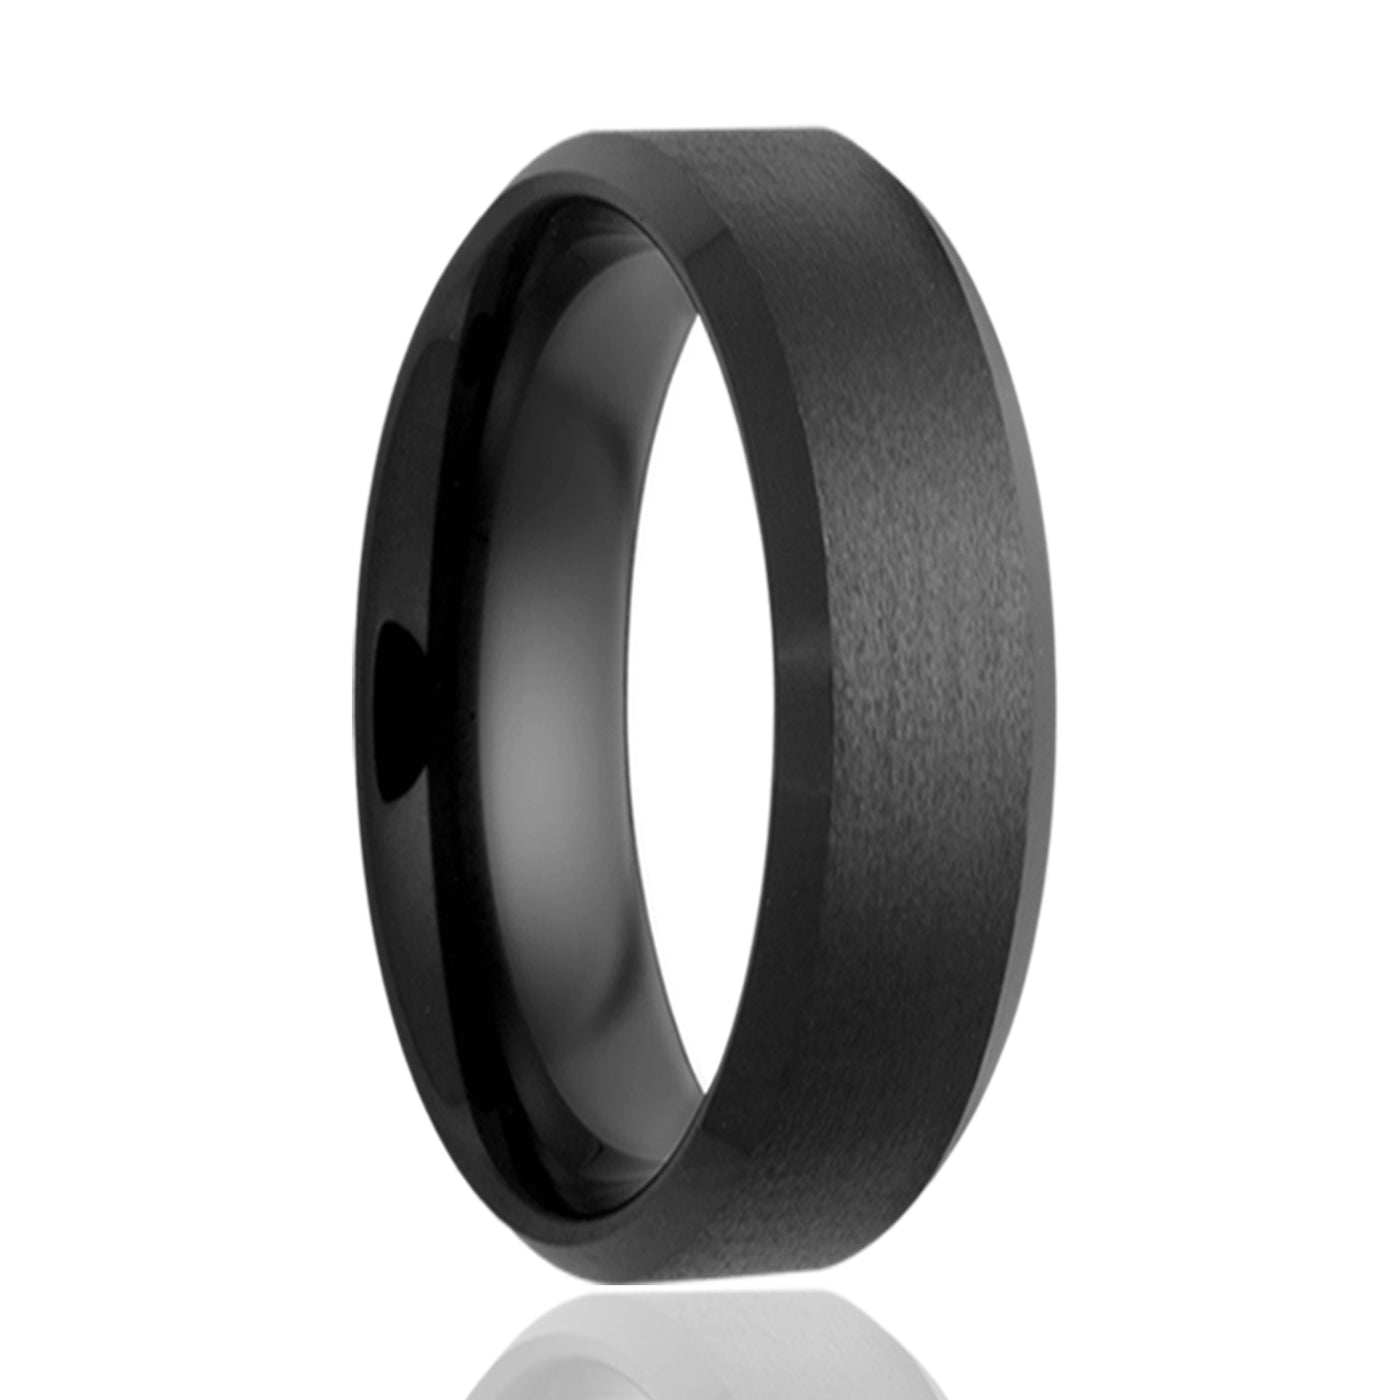 6mm Black Ceramic Bevel Satin Center ring